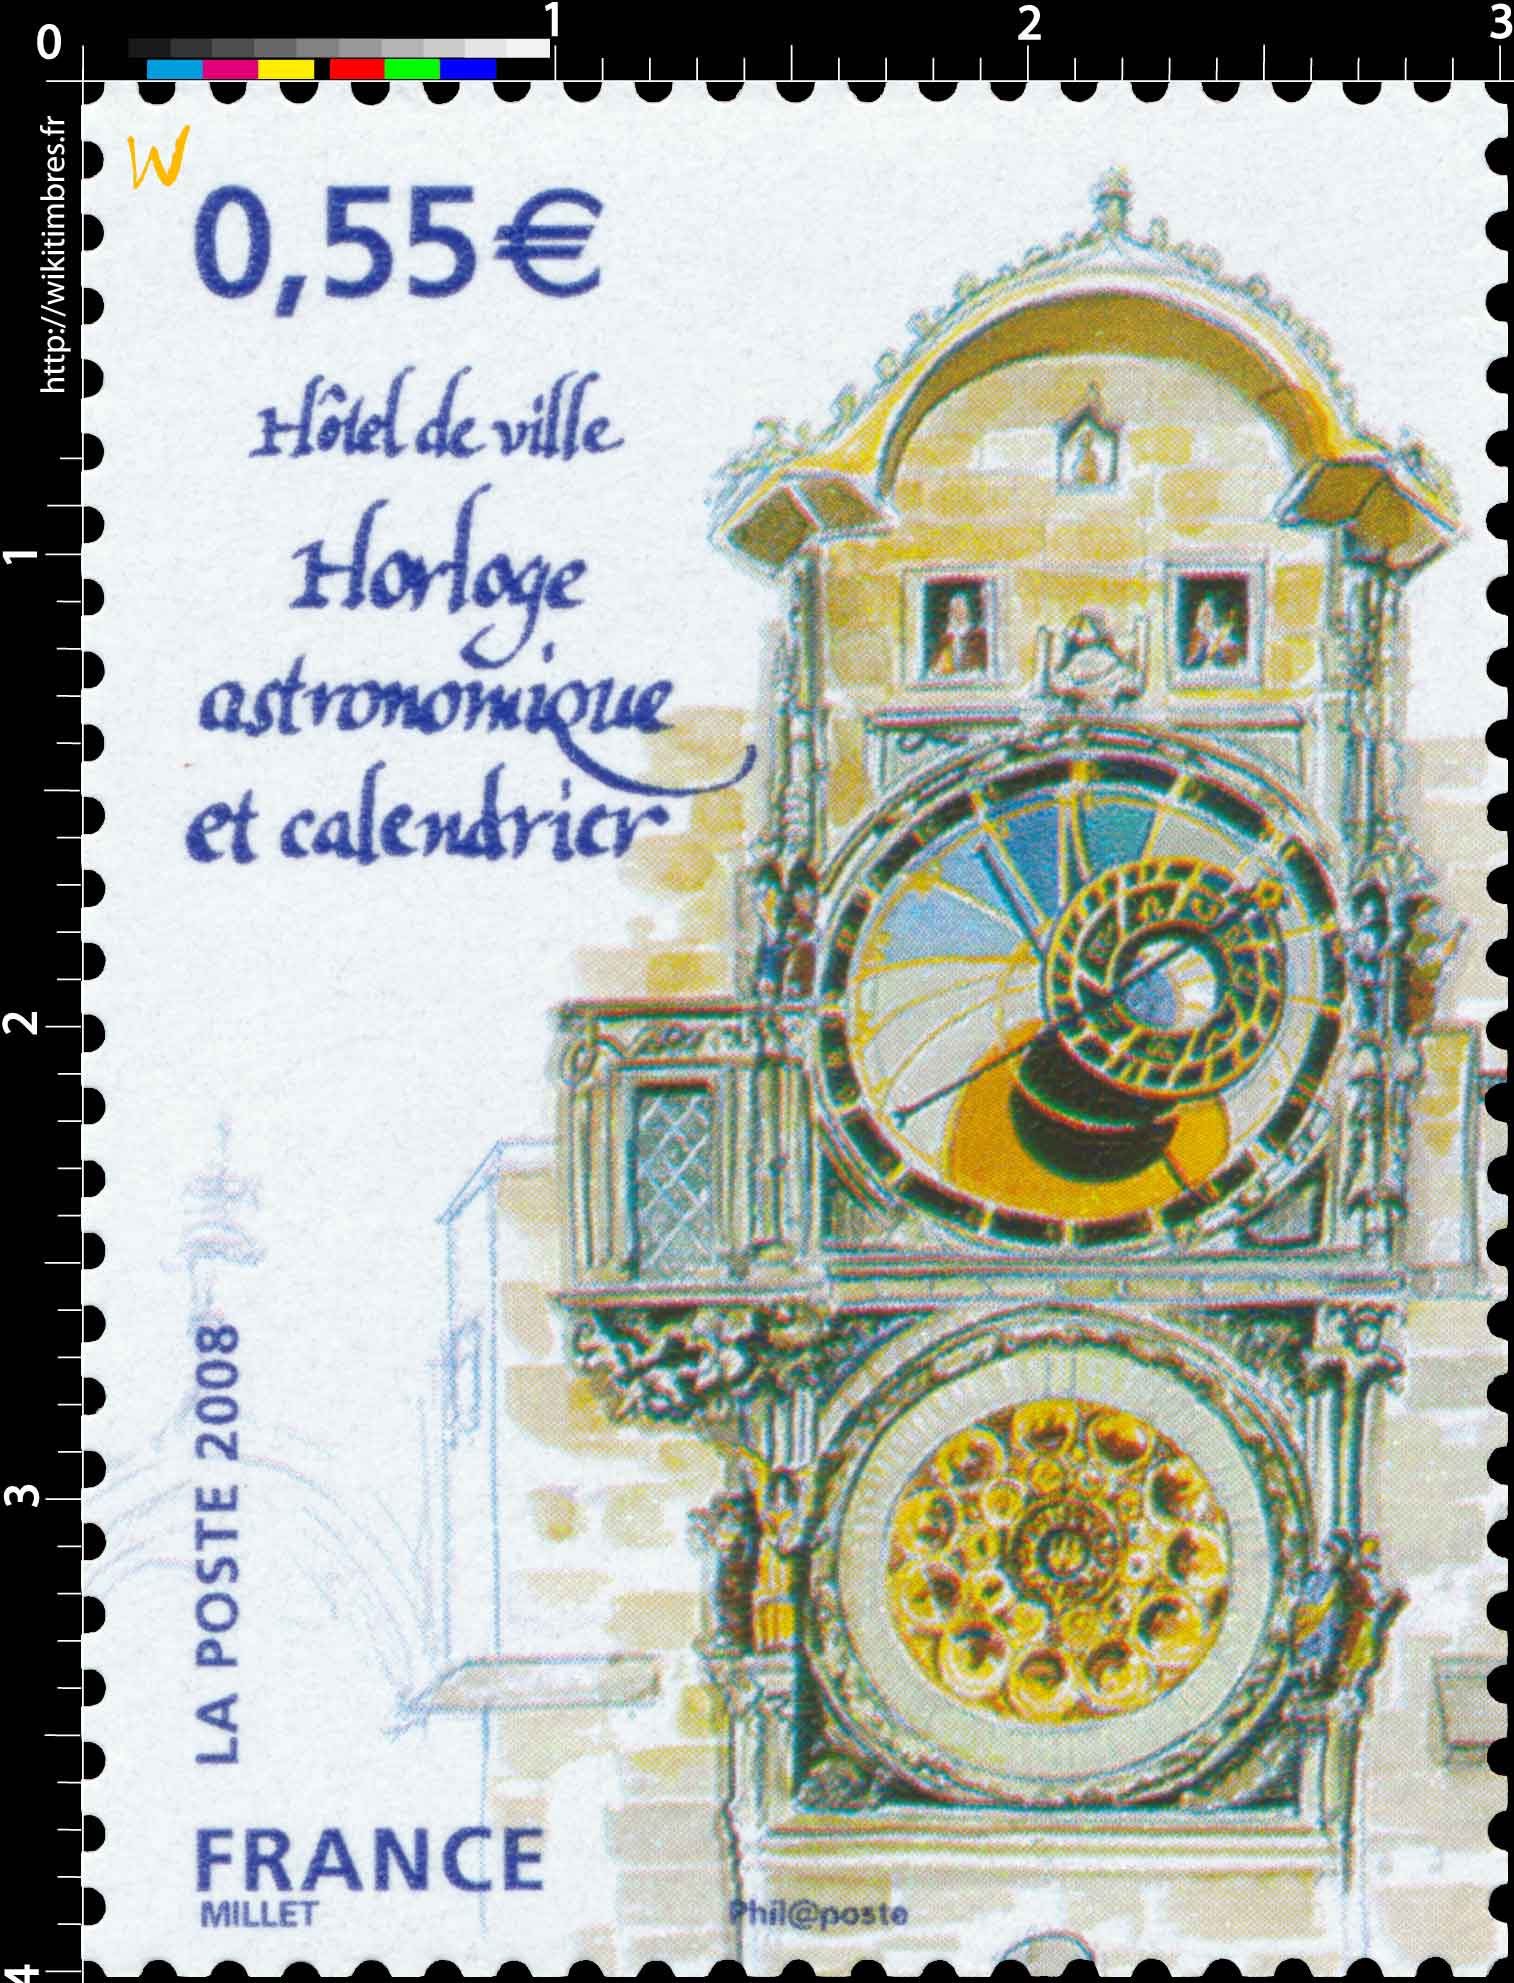 2008 Hôtel de ville Horloge astronomique et calendrier